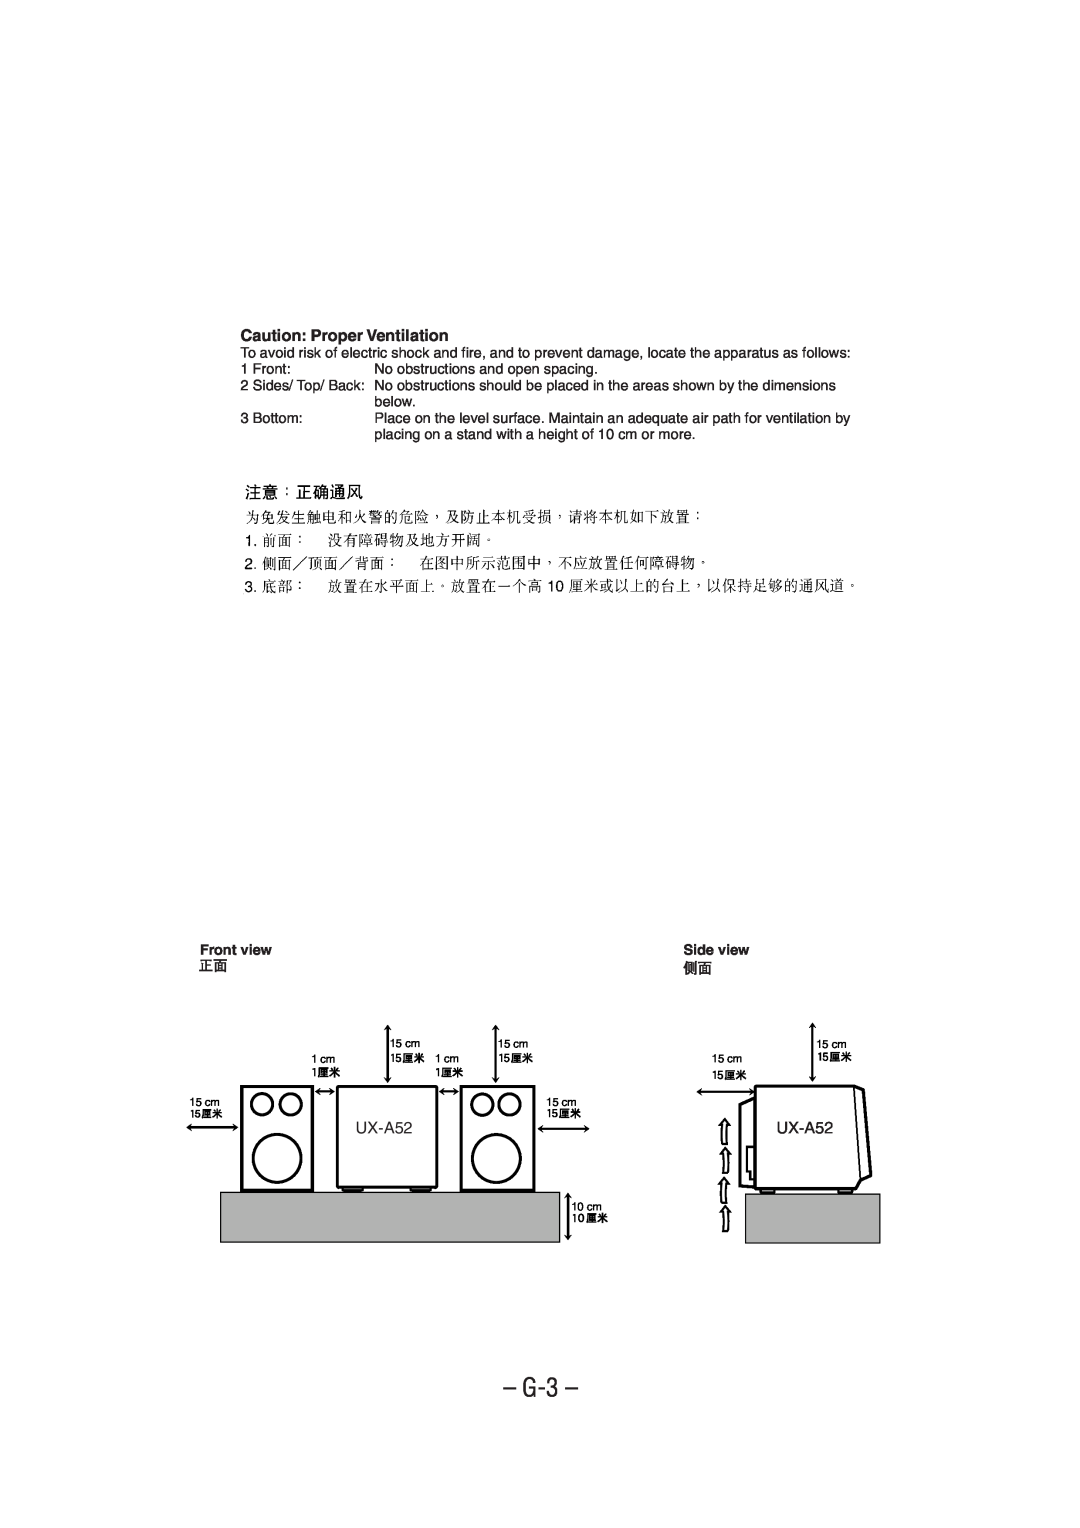 JVC UX-A52 manual G-3, Caution Proper Ventilation, Front view 